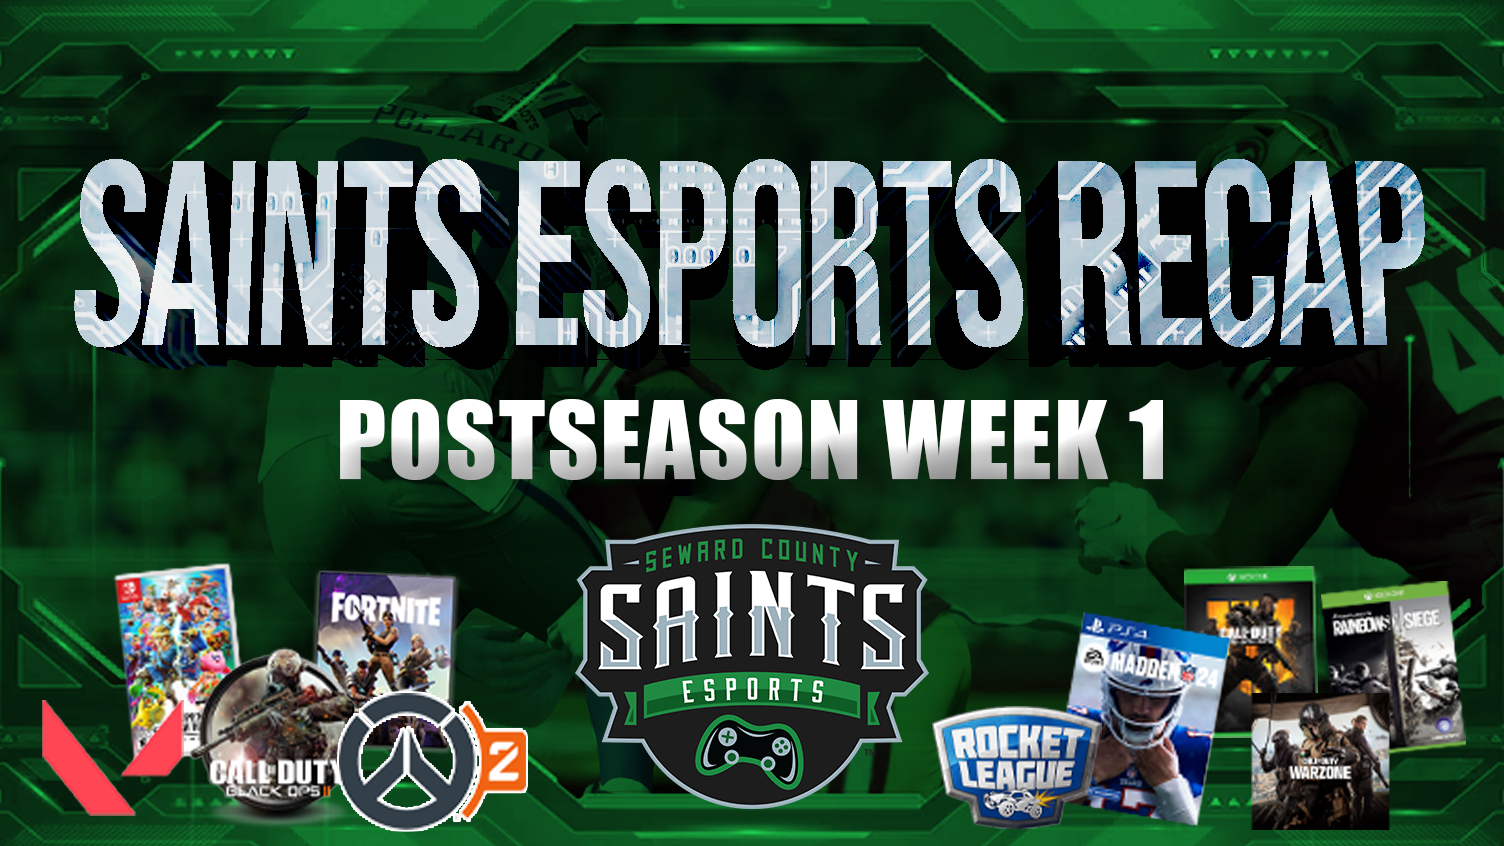 Saints Esports Post-Season Week 1